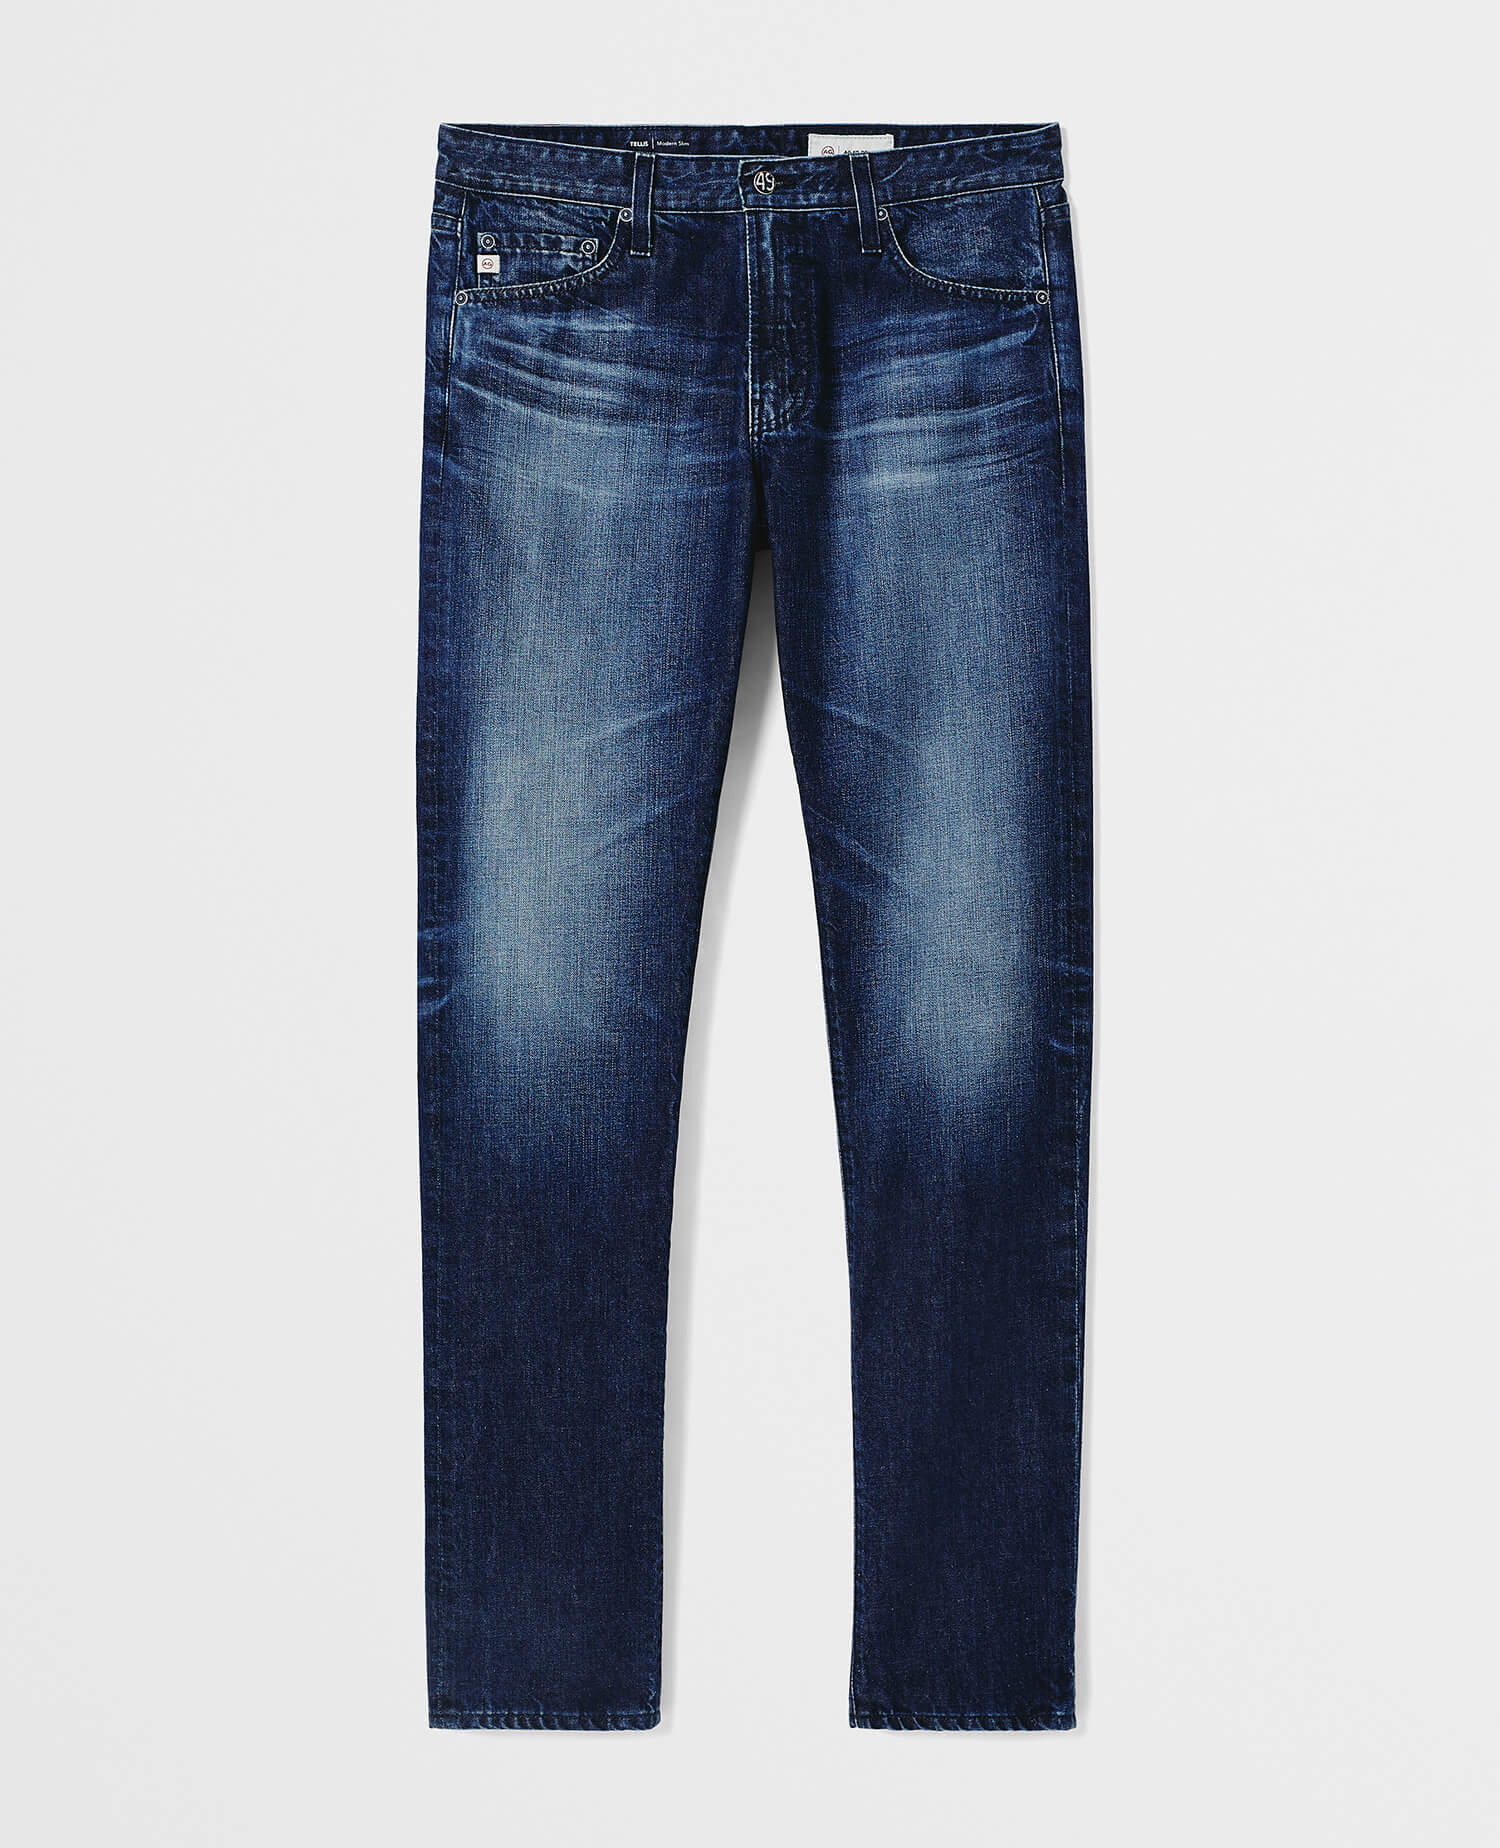 AG Jeans エージージーンズ マッチボックス メンズ size 30 - デニム ...